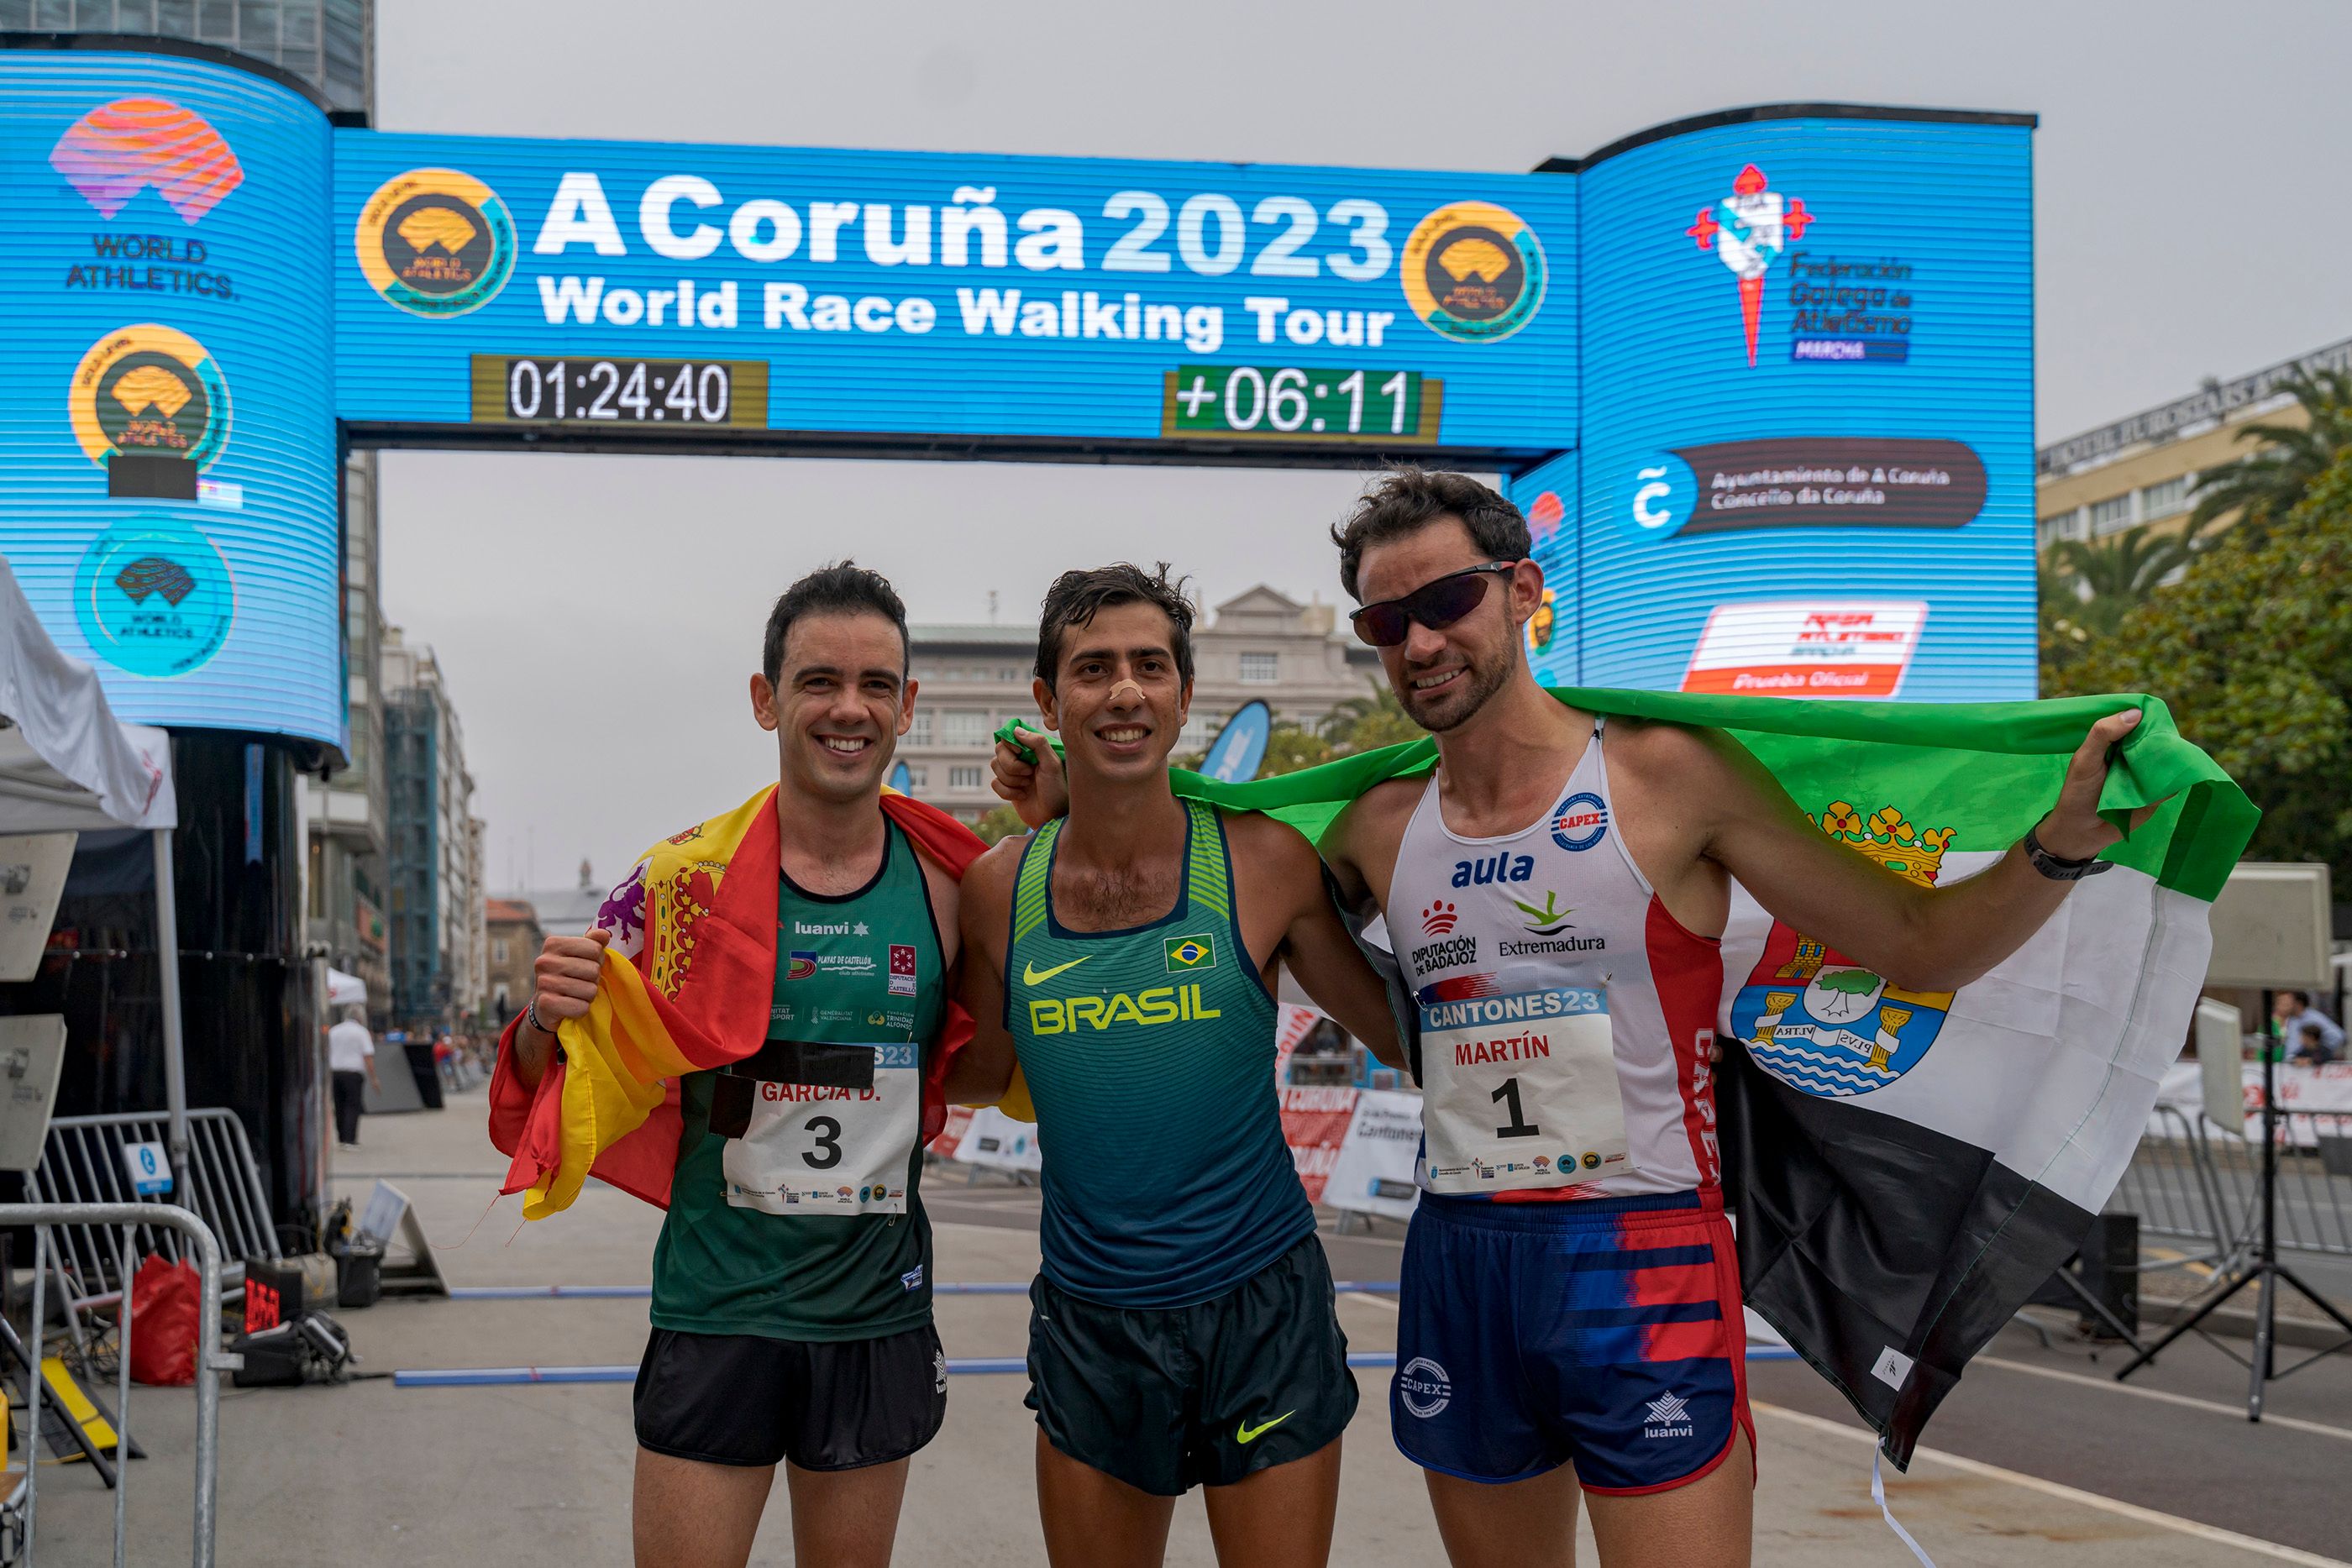 Diego García, Caio Bonfim and Alvaro Martin in La Coruna